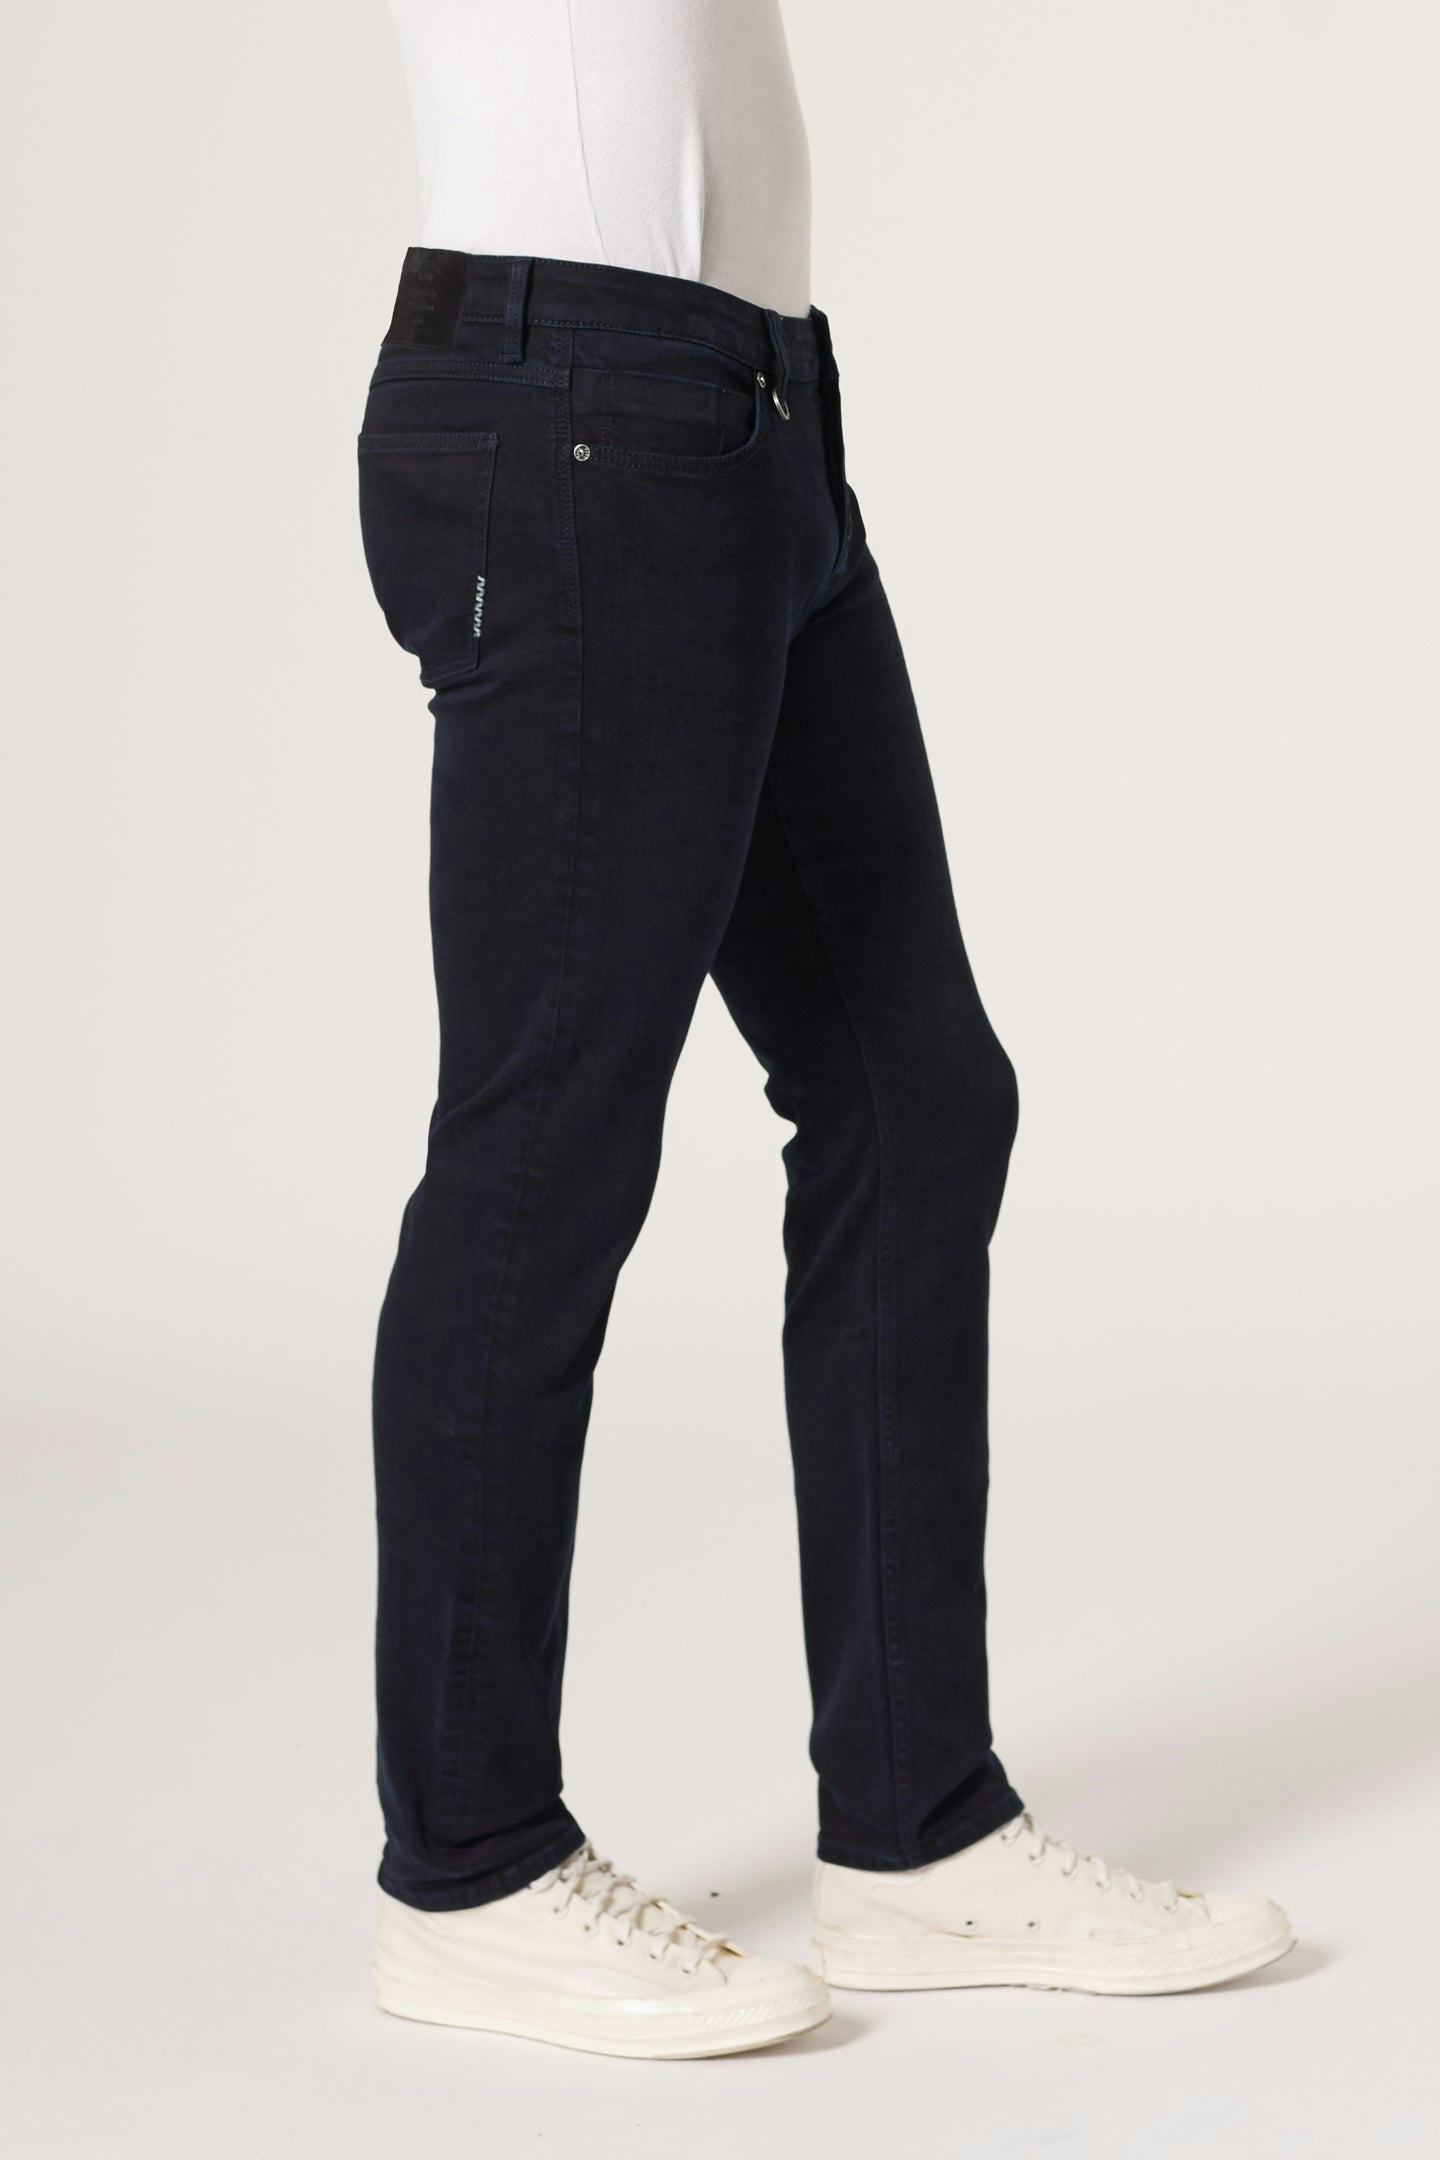 Iggy Skinny - Union Neuw dark black mens-jeans 